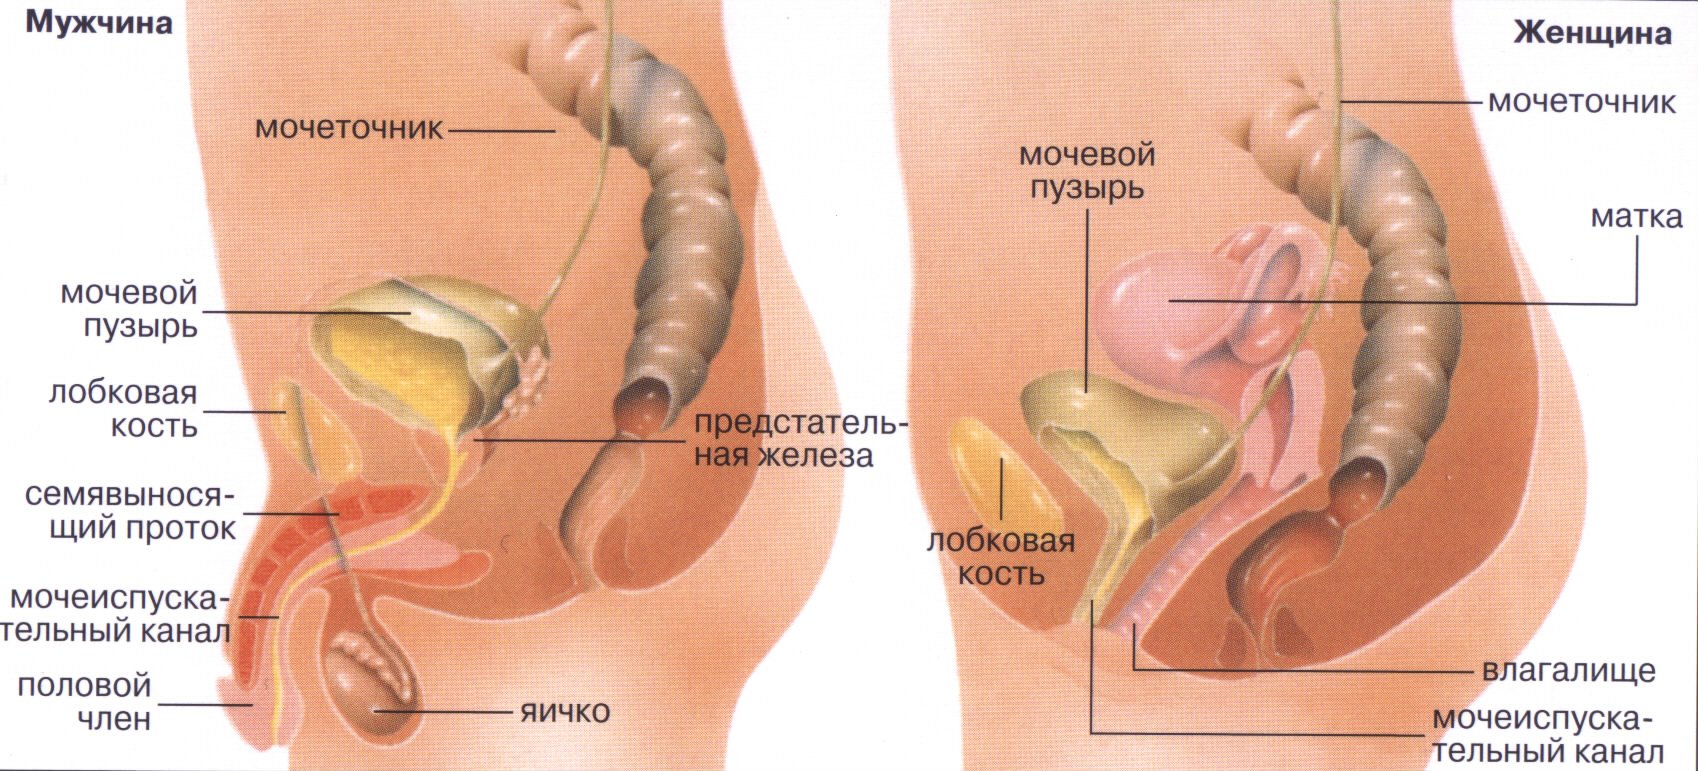 Мочевой пузырь у мужчин и женщин. Мочевой пузырь анатомия расположение. Анатомия мужской мочеполовой системы. Мочеточник у женщин расположение. Анатомия мочеполовой системы женщины.